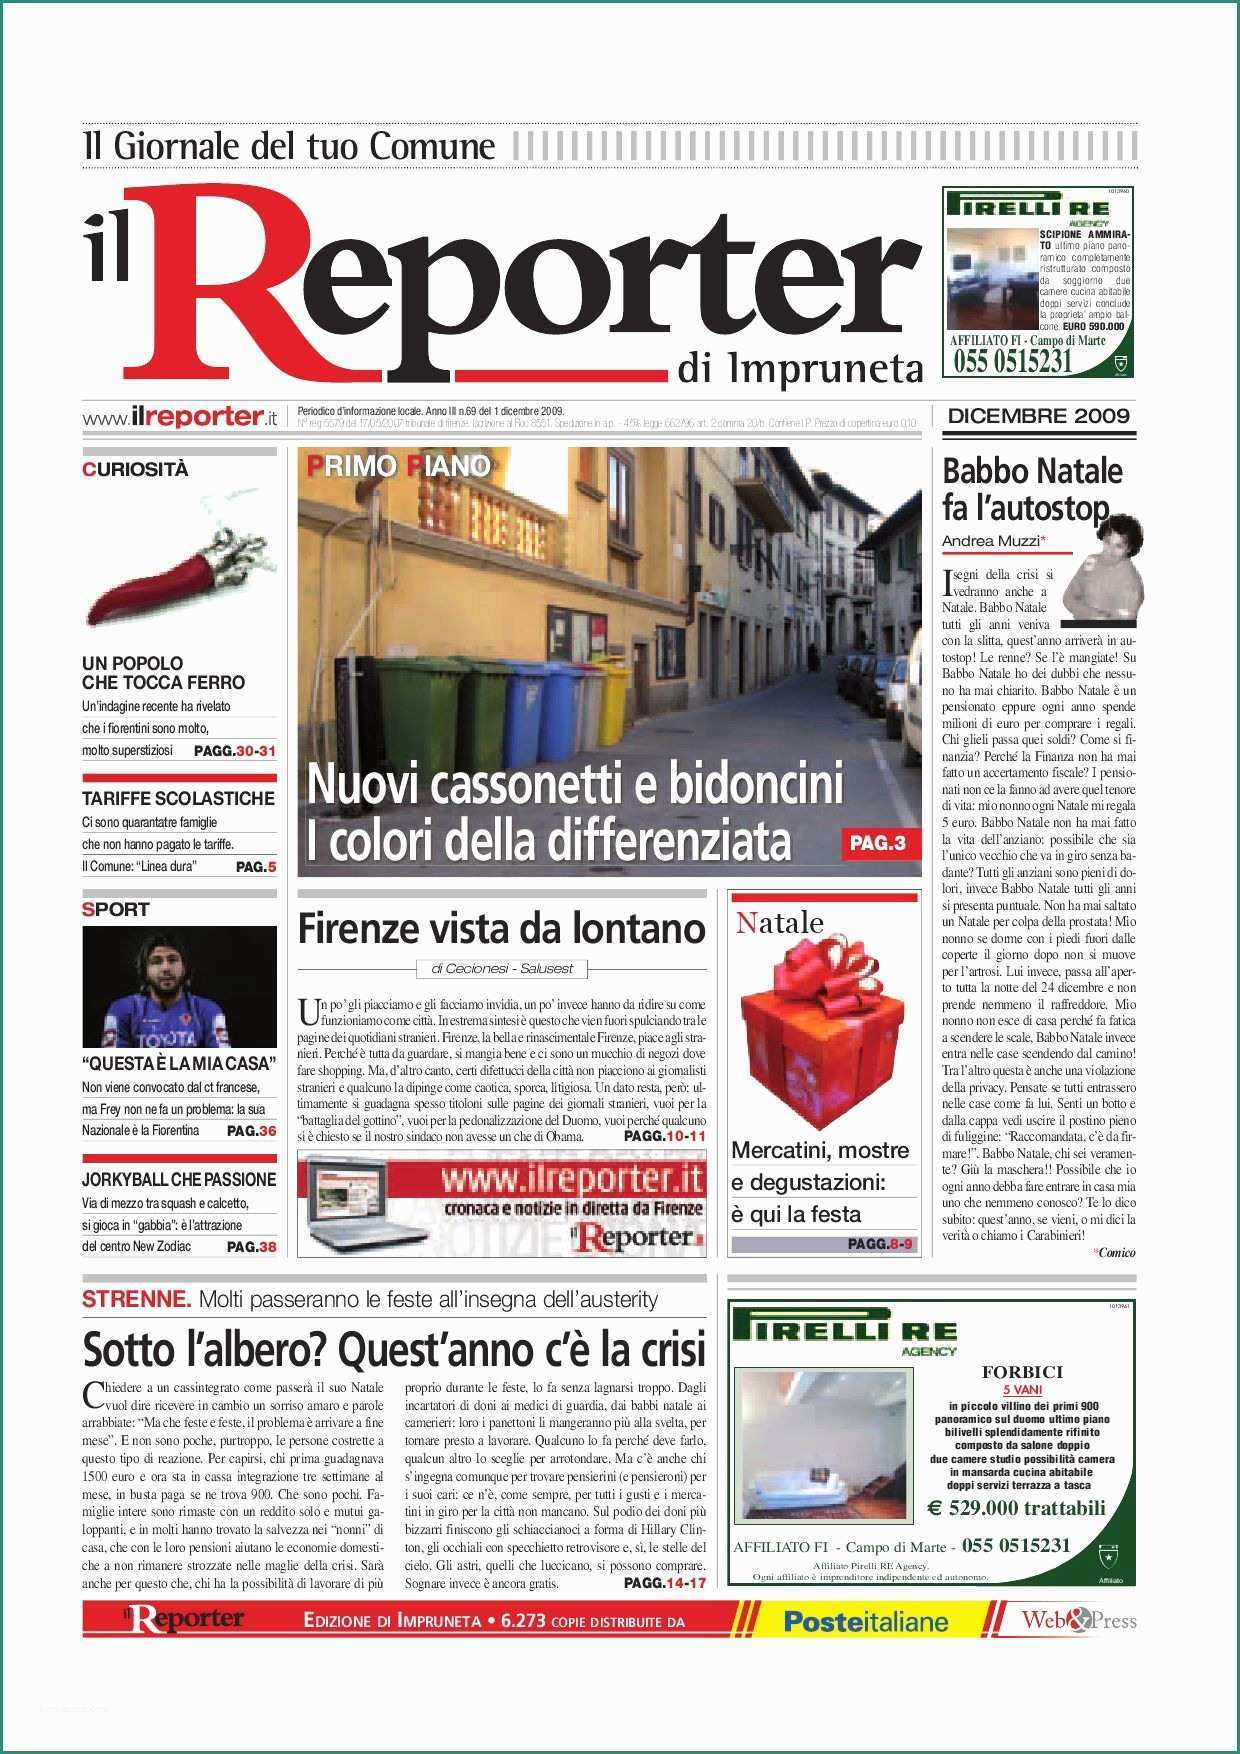 Paranco Elettrico Da Balcone E Il Reporter Impruneta Dicembre 2009 by Ilreporter issuu